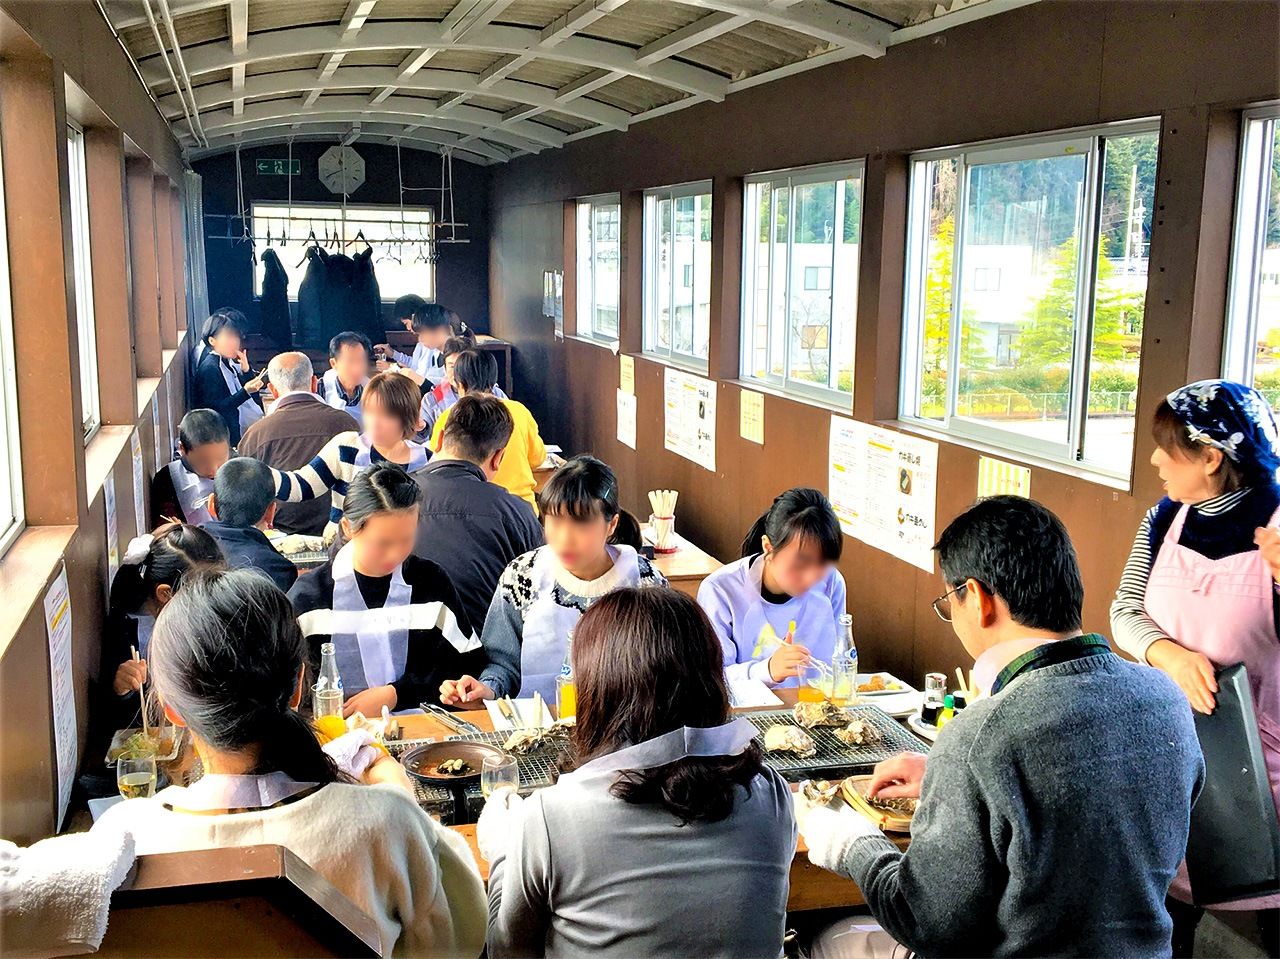 يفتح مطعم (أتسوأتسو تيه) أبوابه كل عام من منتصف يناير/ كانون الثاني حتى منتصف مارس/ آذار في عطلات نهاية الأسبوع والعطلات الرسمية. وهو حصري لركاب قطار خط (نوتو ساتوياما ساتومي)، لكن من الضروري الحجز مسبقًا.